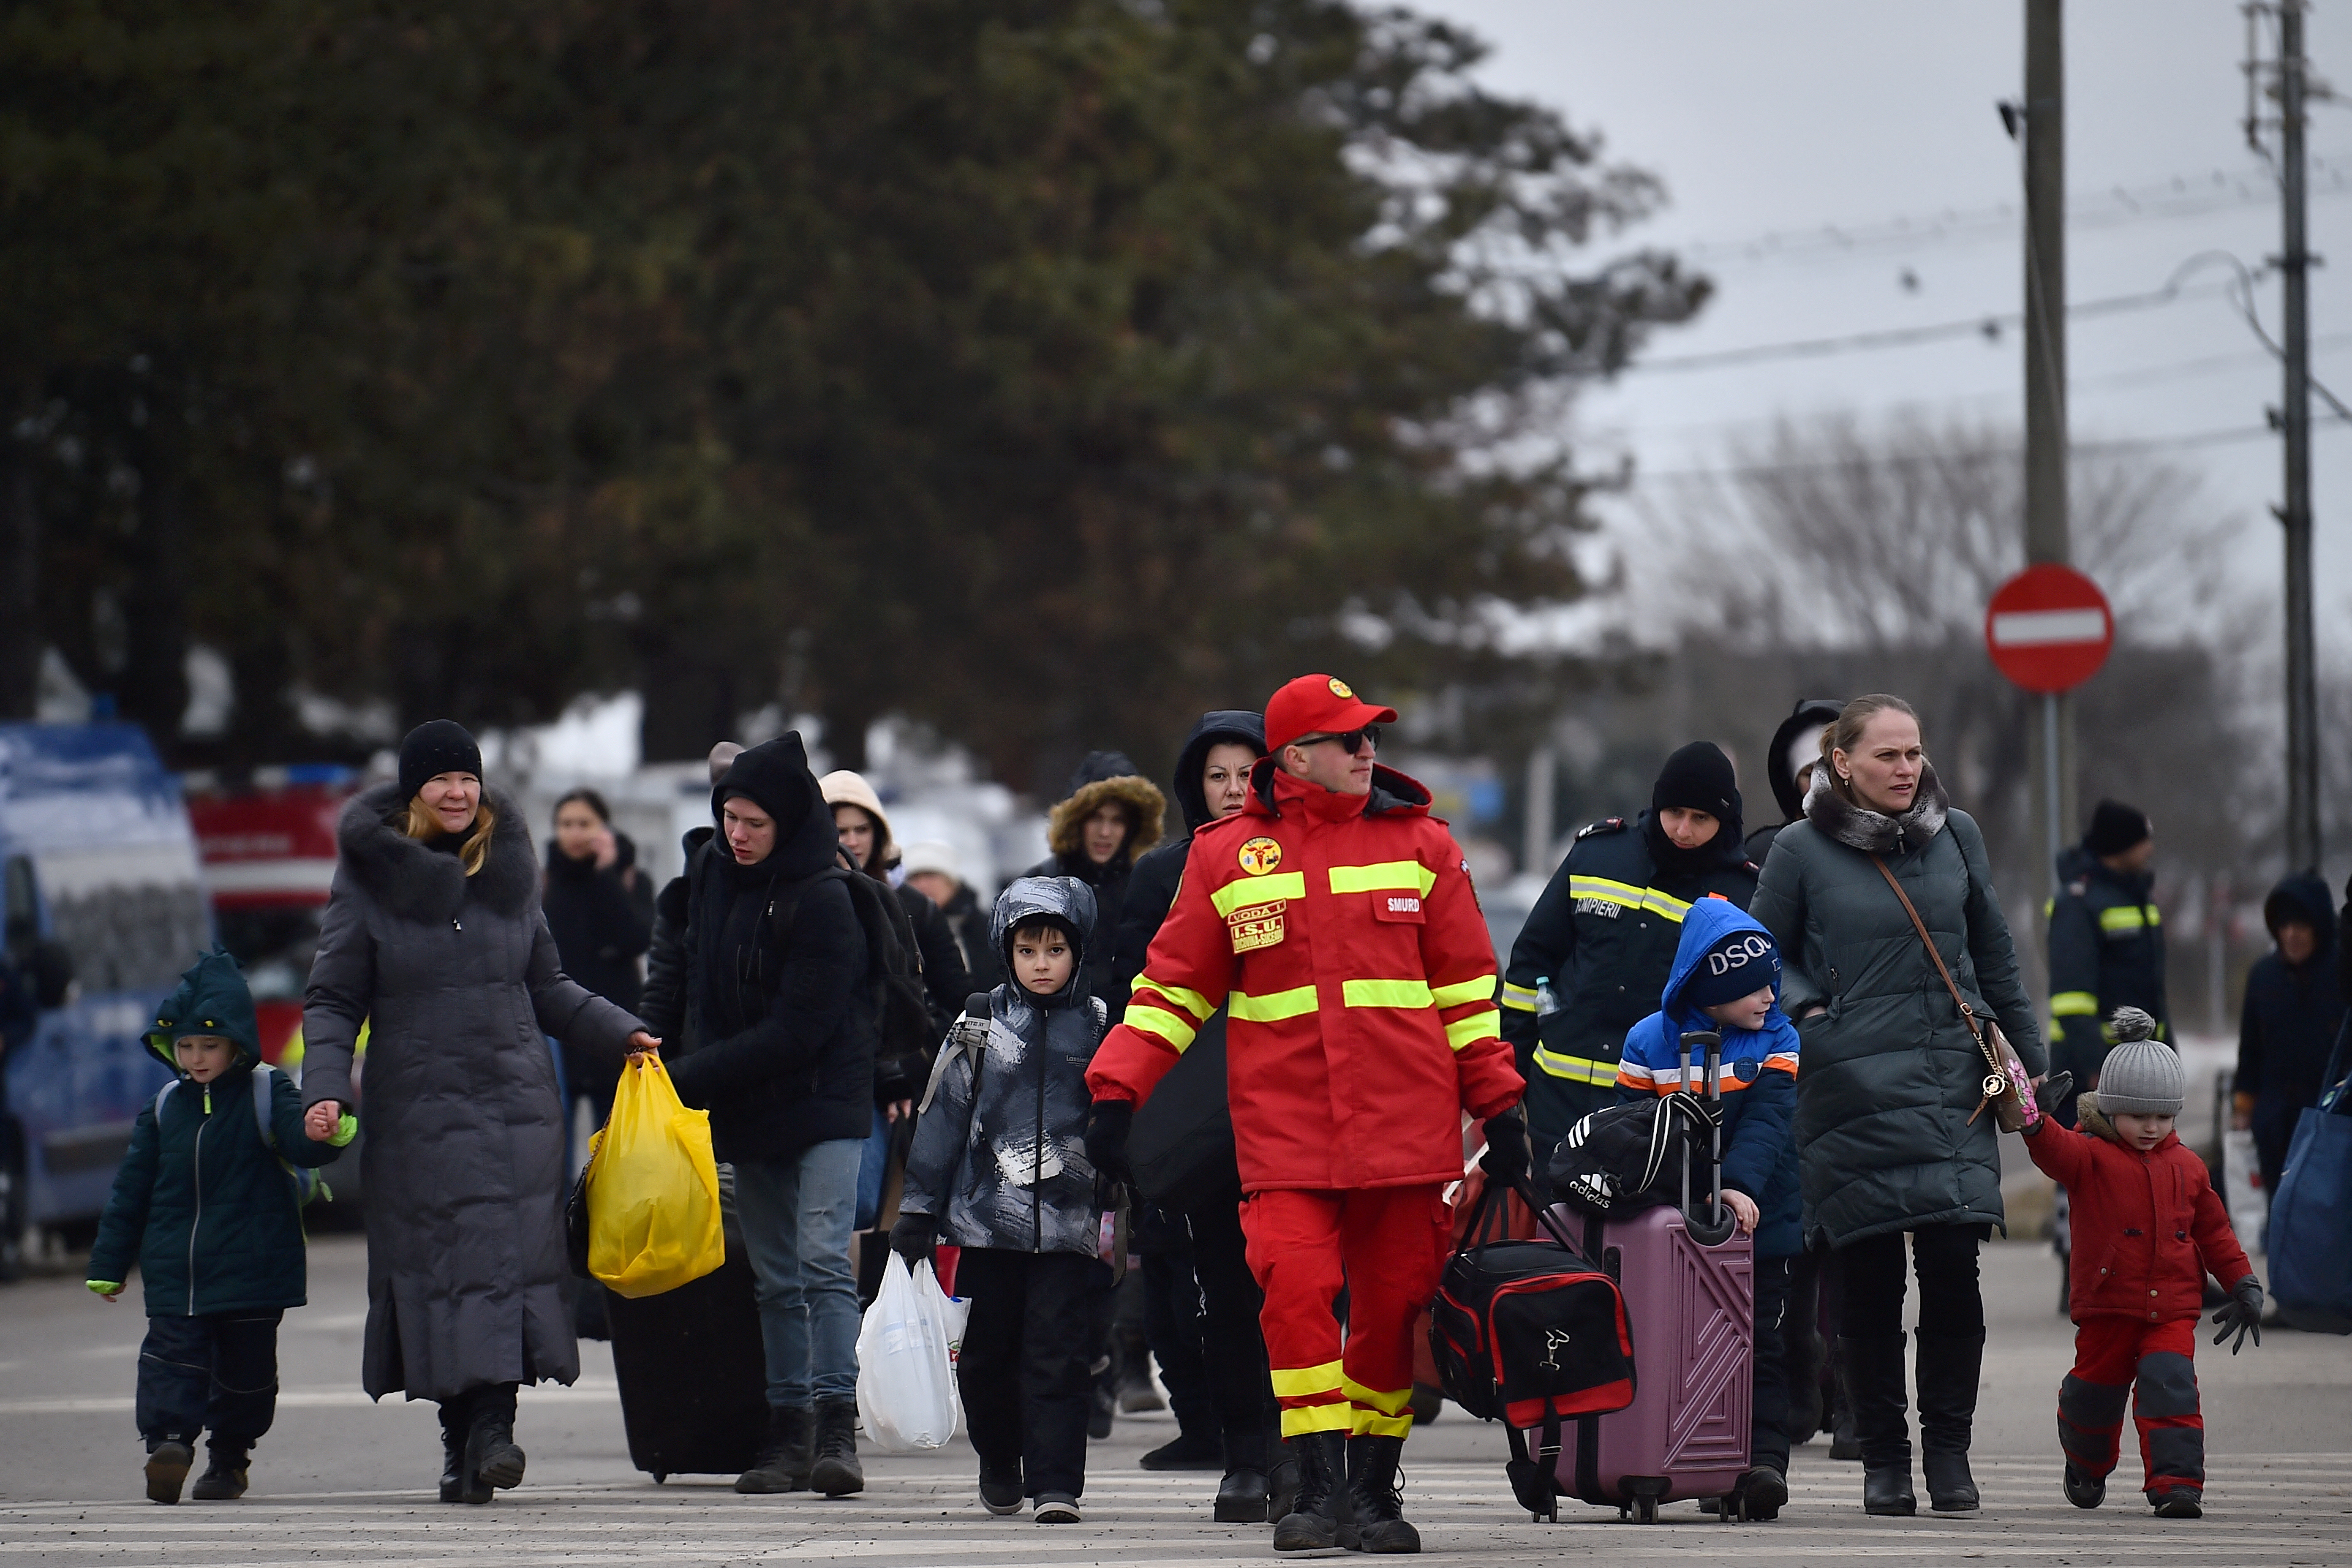 Un vigile del fuoco guida una famiglia di rifugiati dopo essere fuggiti dall'Ucraina in Romania, in seguito all'invasione russa dell'Ucraina, al valico di frontiera a Siret, Romania, il 13 marzo 2022. REUTERS/Clodagh Kilcoyne